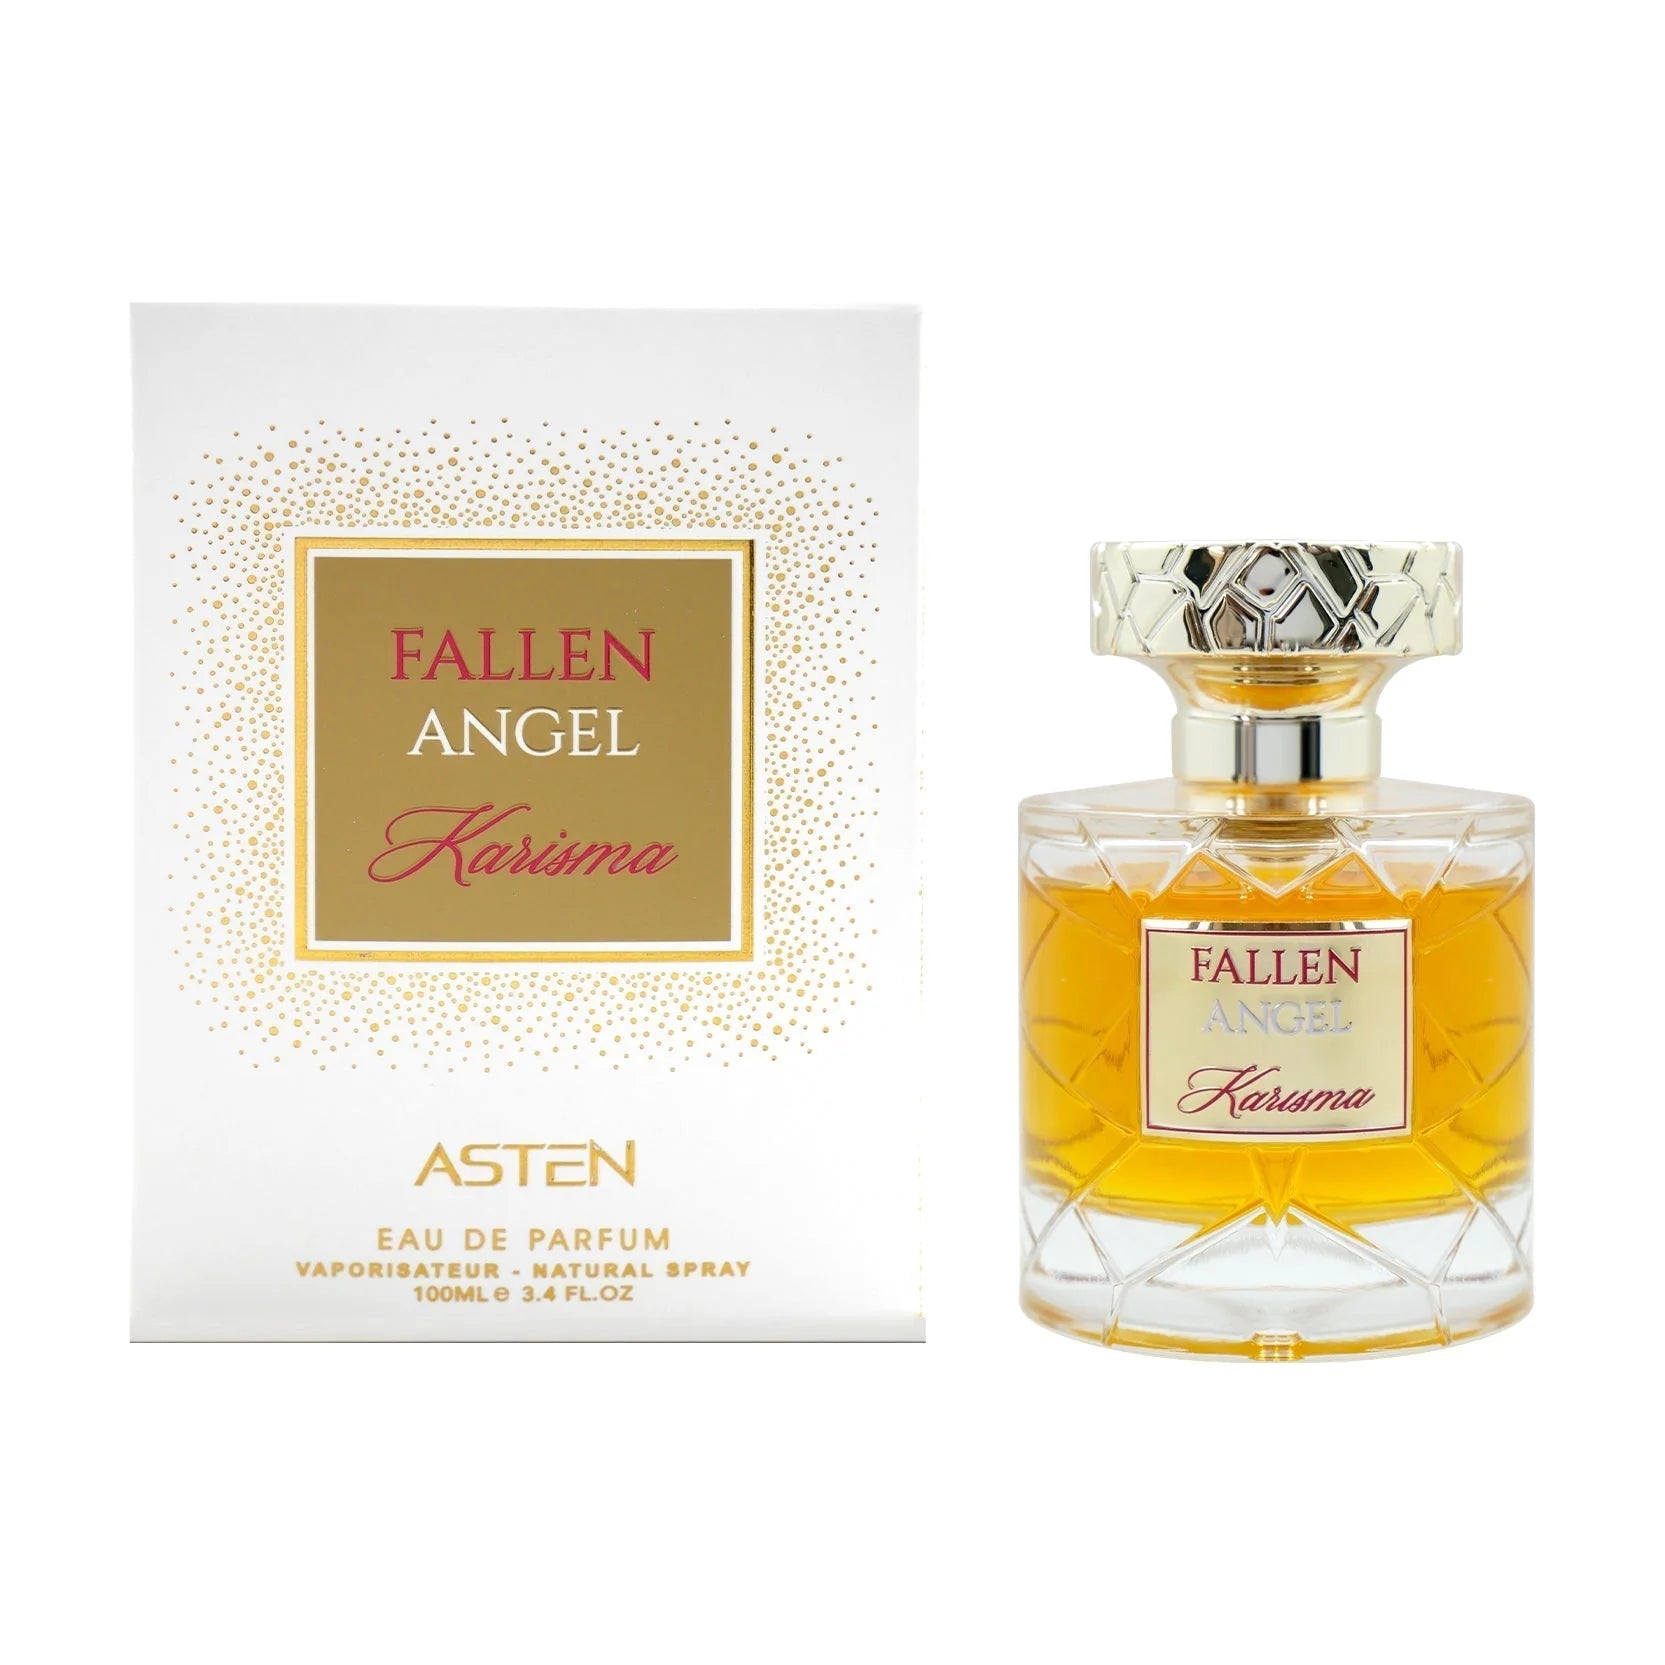 Fallen Angel Karisma By Asten Unisex Eau De Parfum 3.4 Oz: A Symphony of Allure